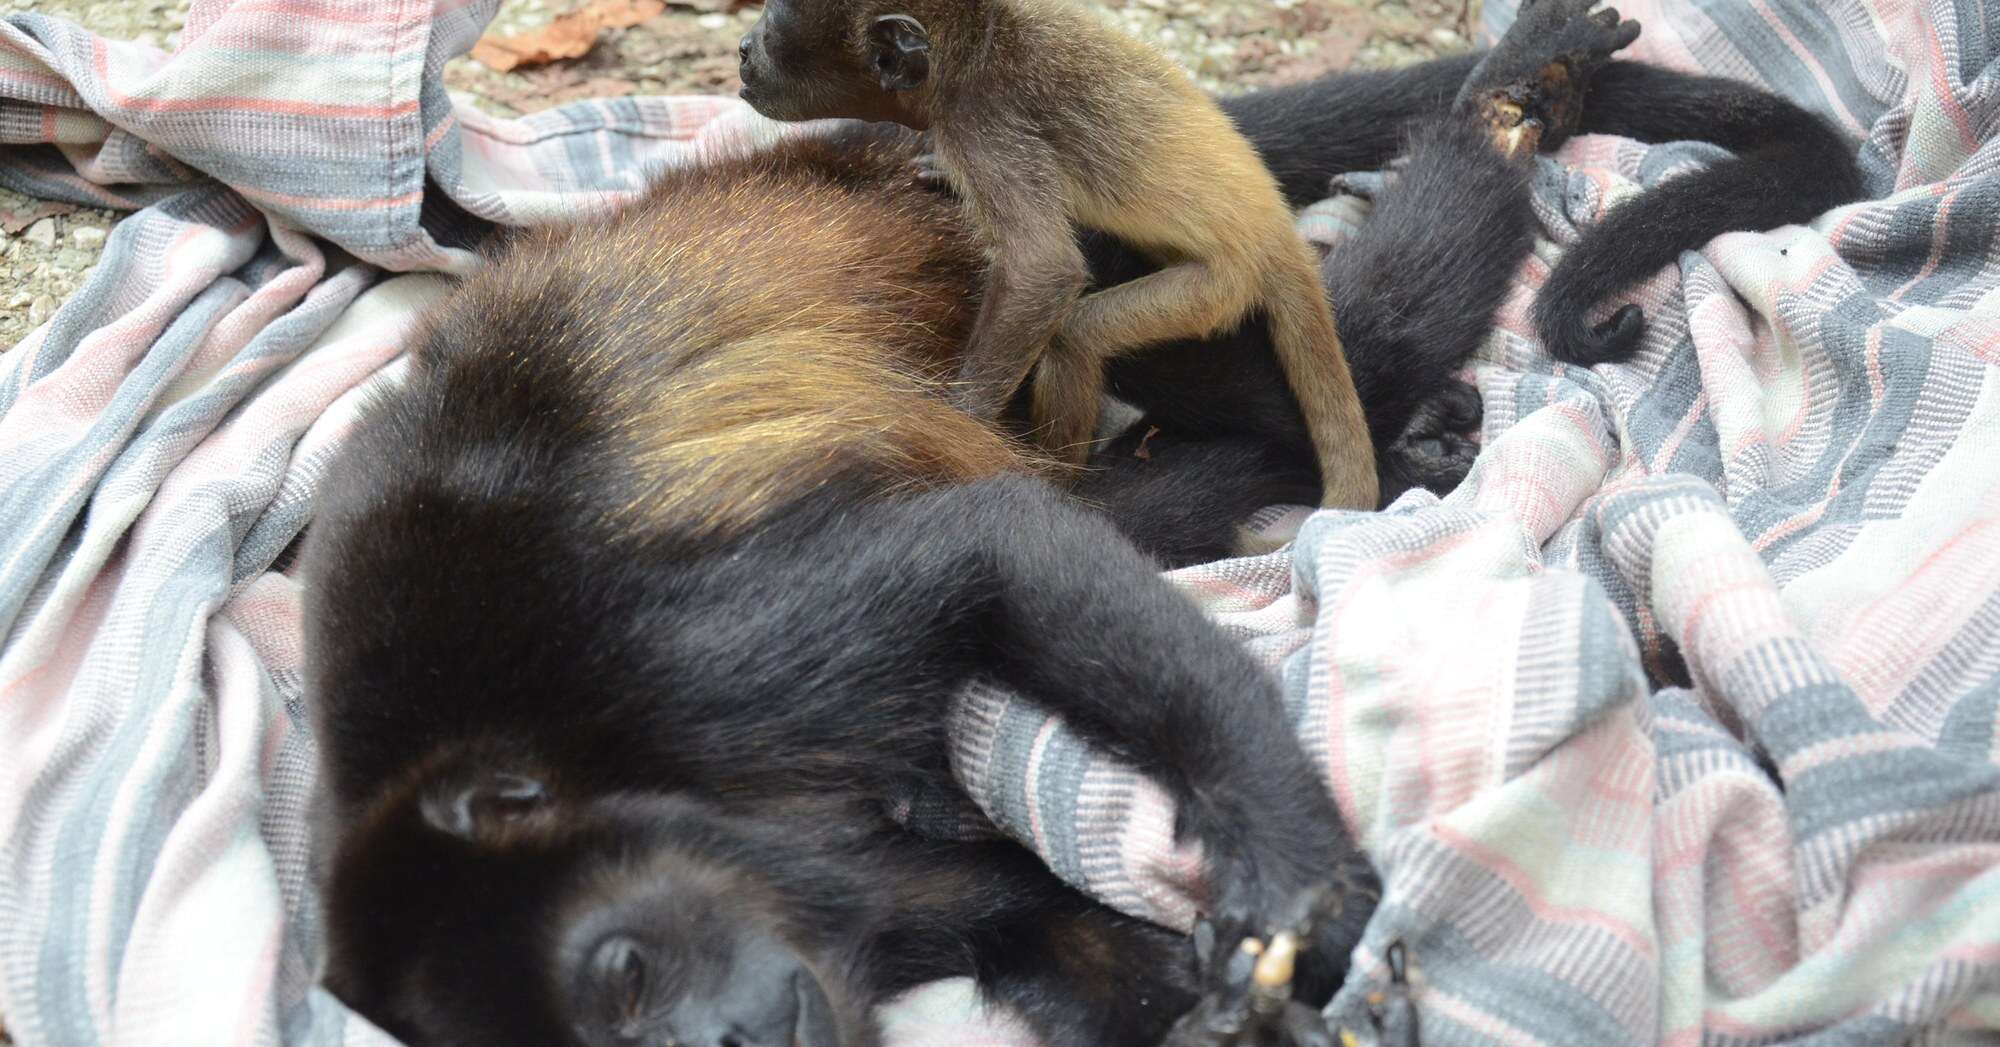 Baby howler monkey holding her dead mom's body